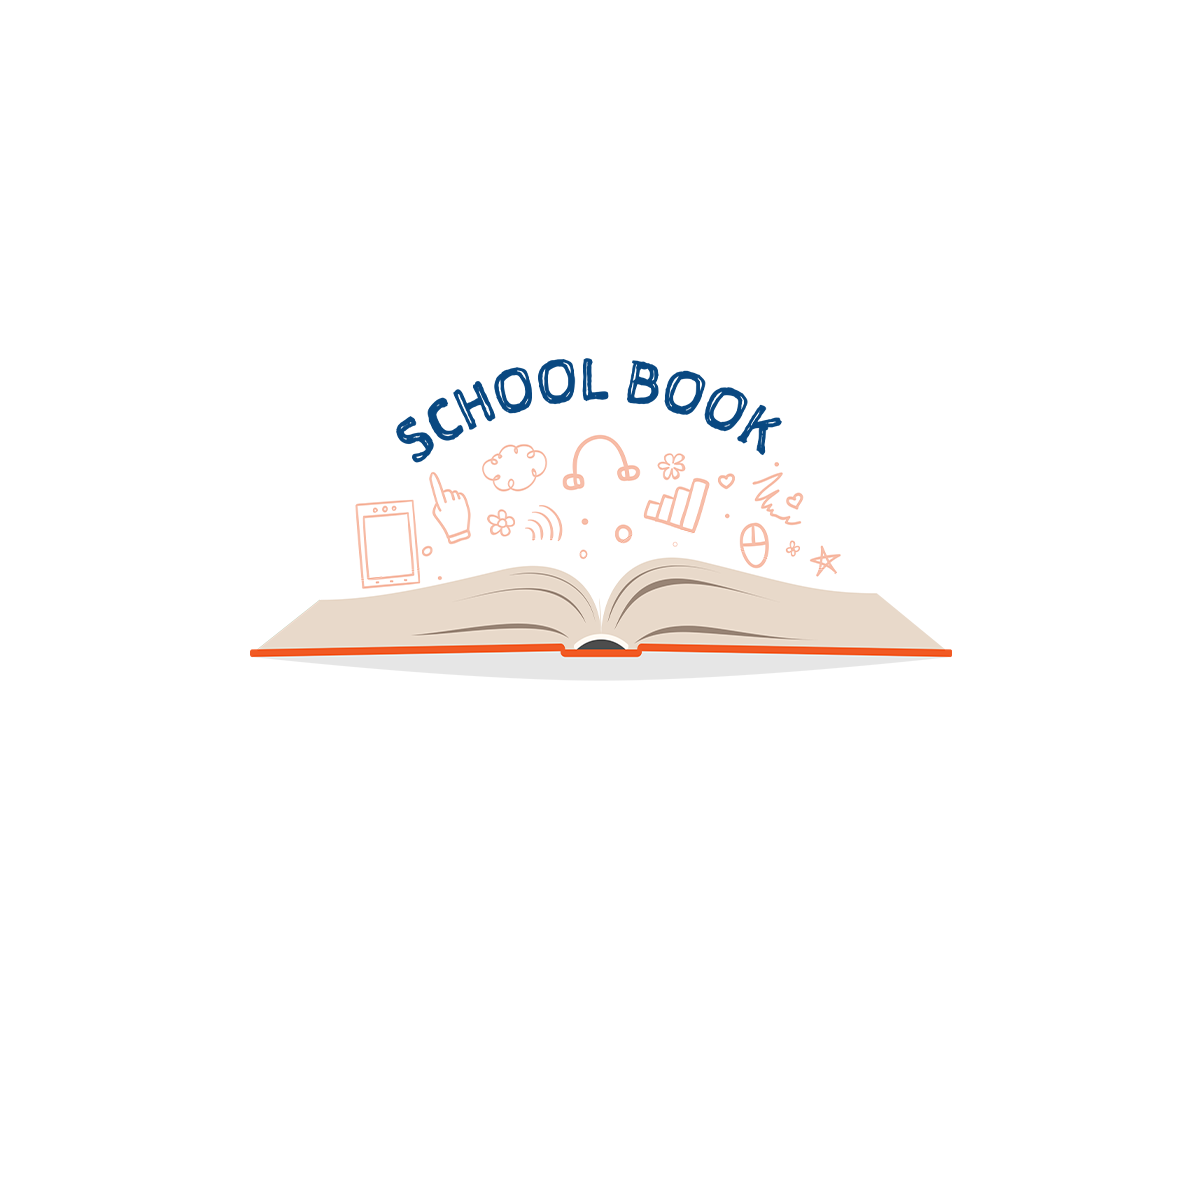 SCHOOL BOOK